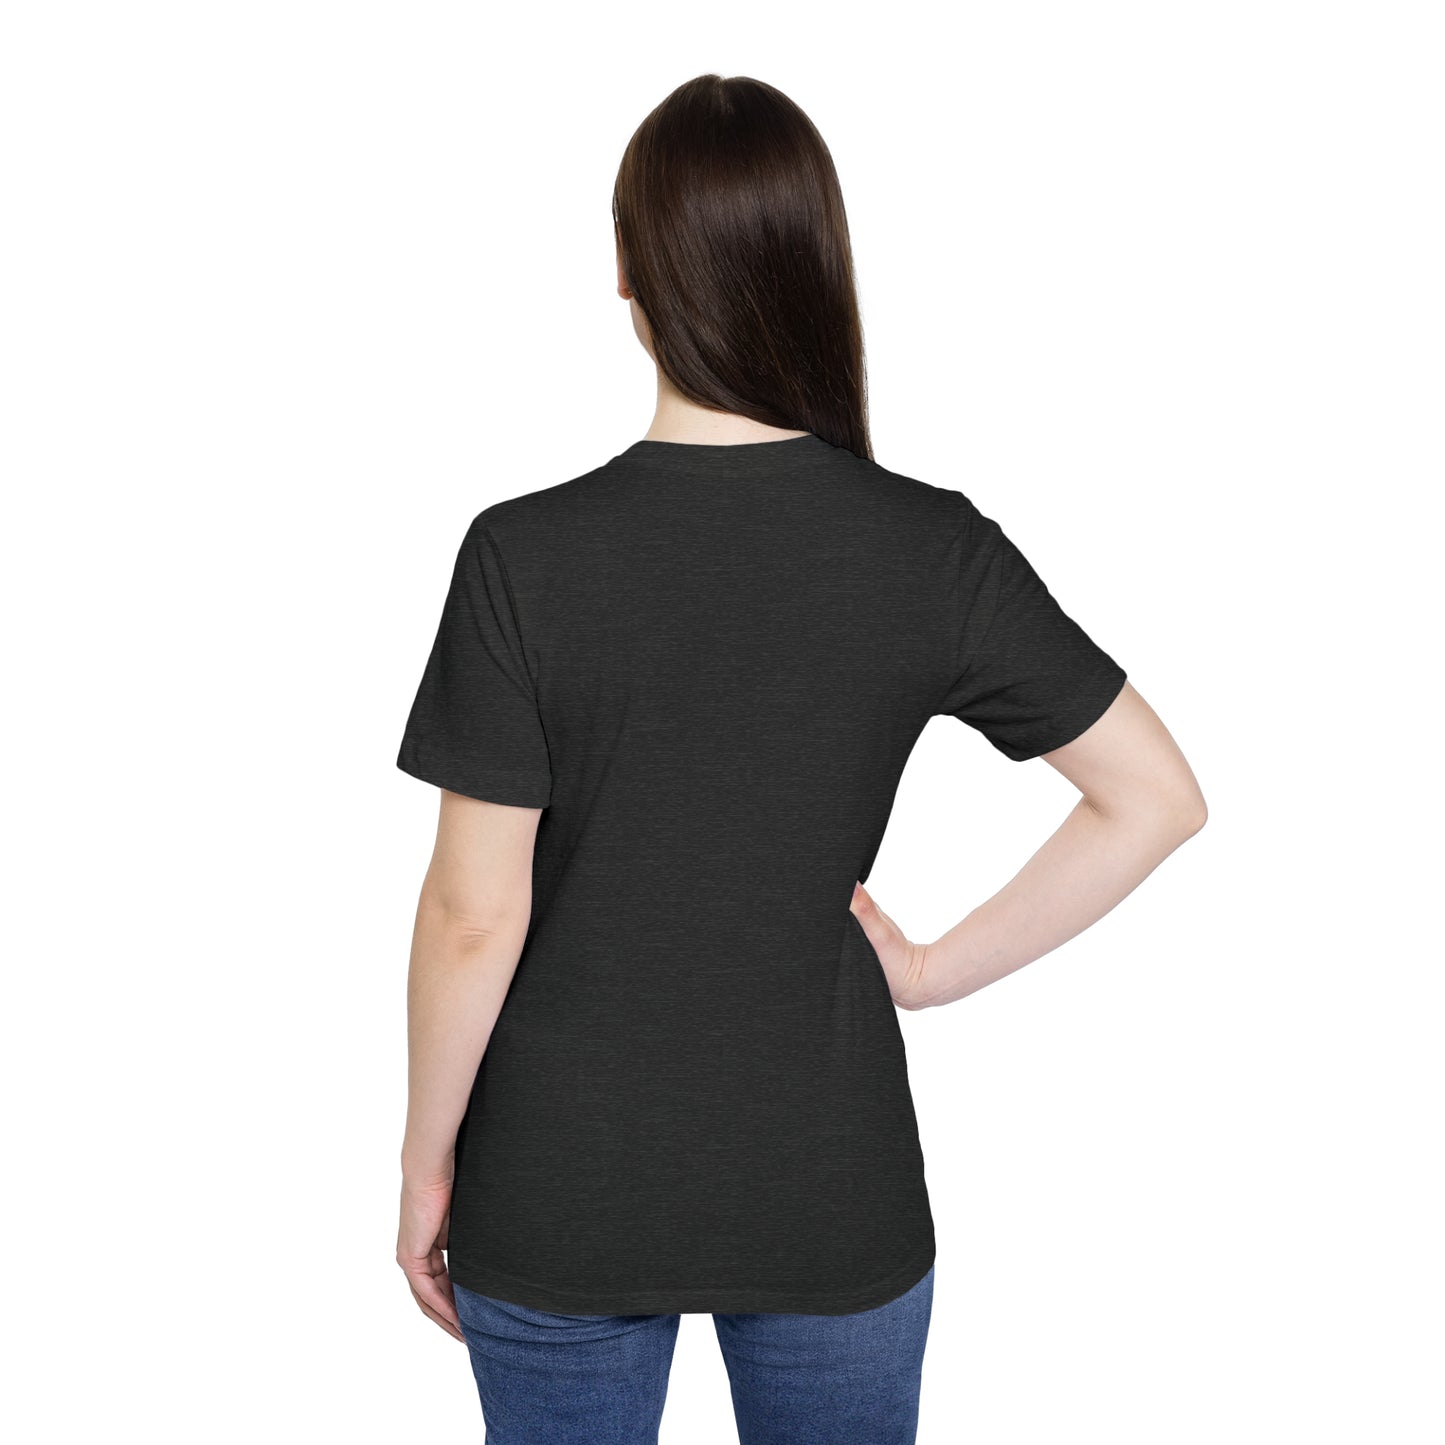 Unisex Short-Sleeve Jersey T-Shirt